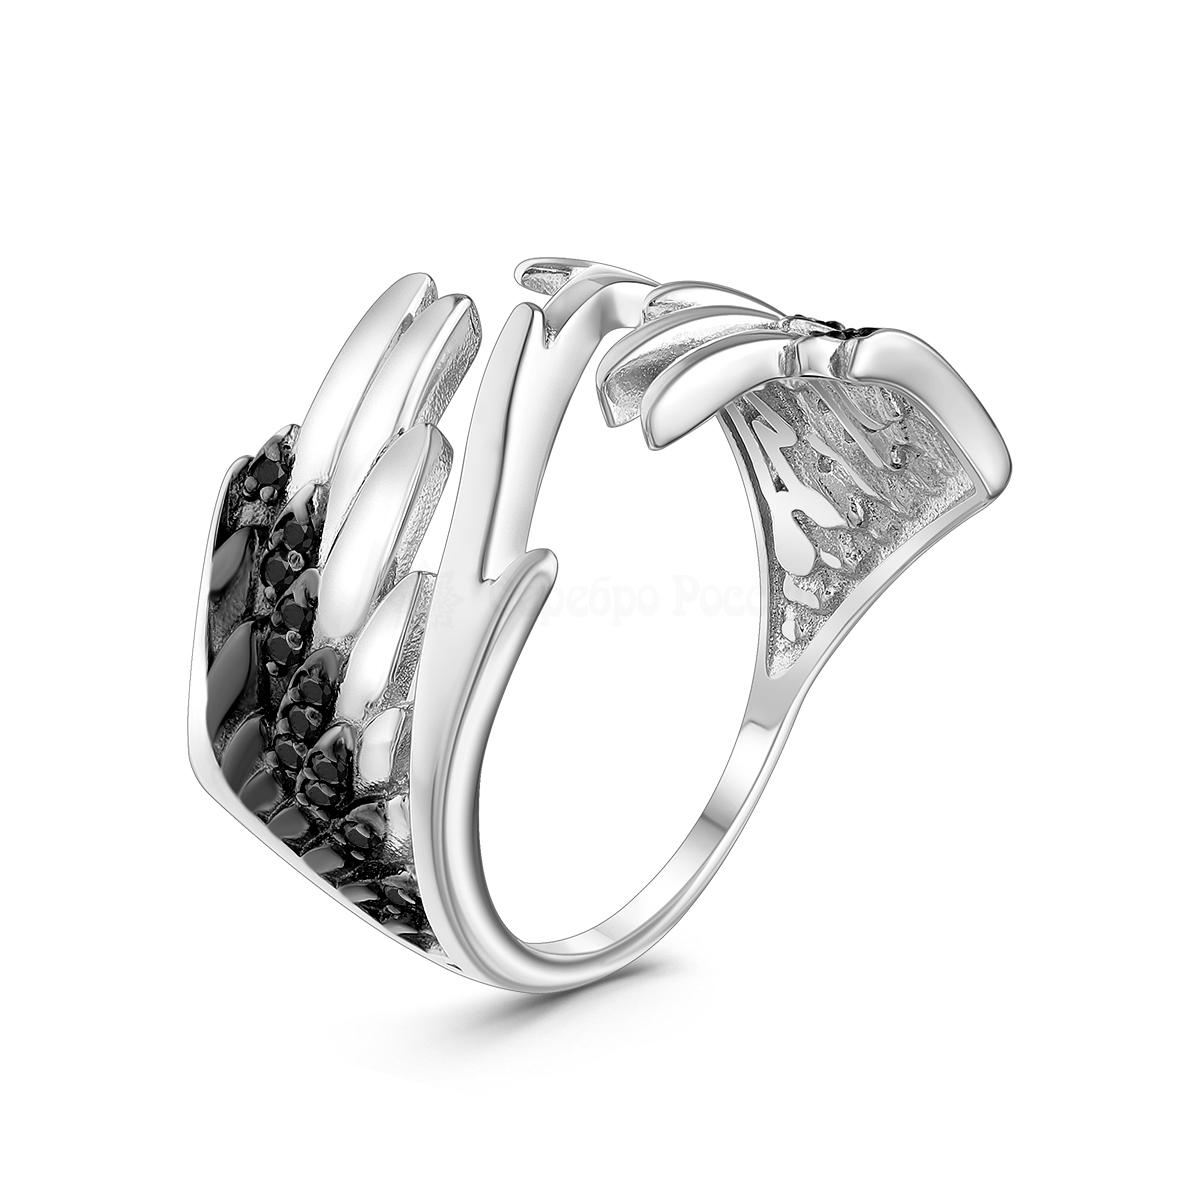 Кольцо из серебра с натуральной шпинелью родированное - Крылья 1-419рч416